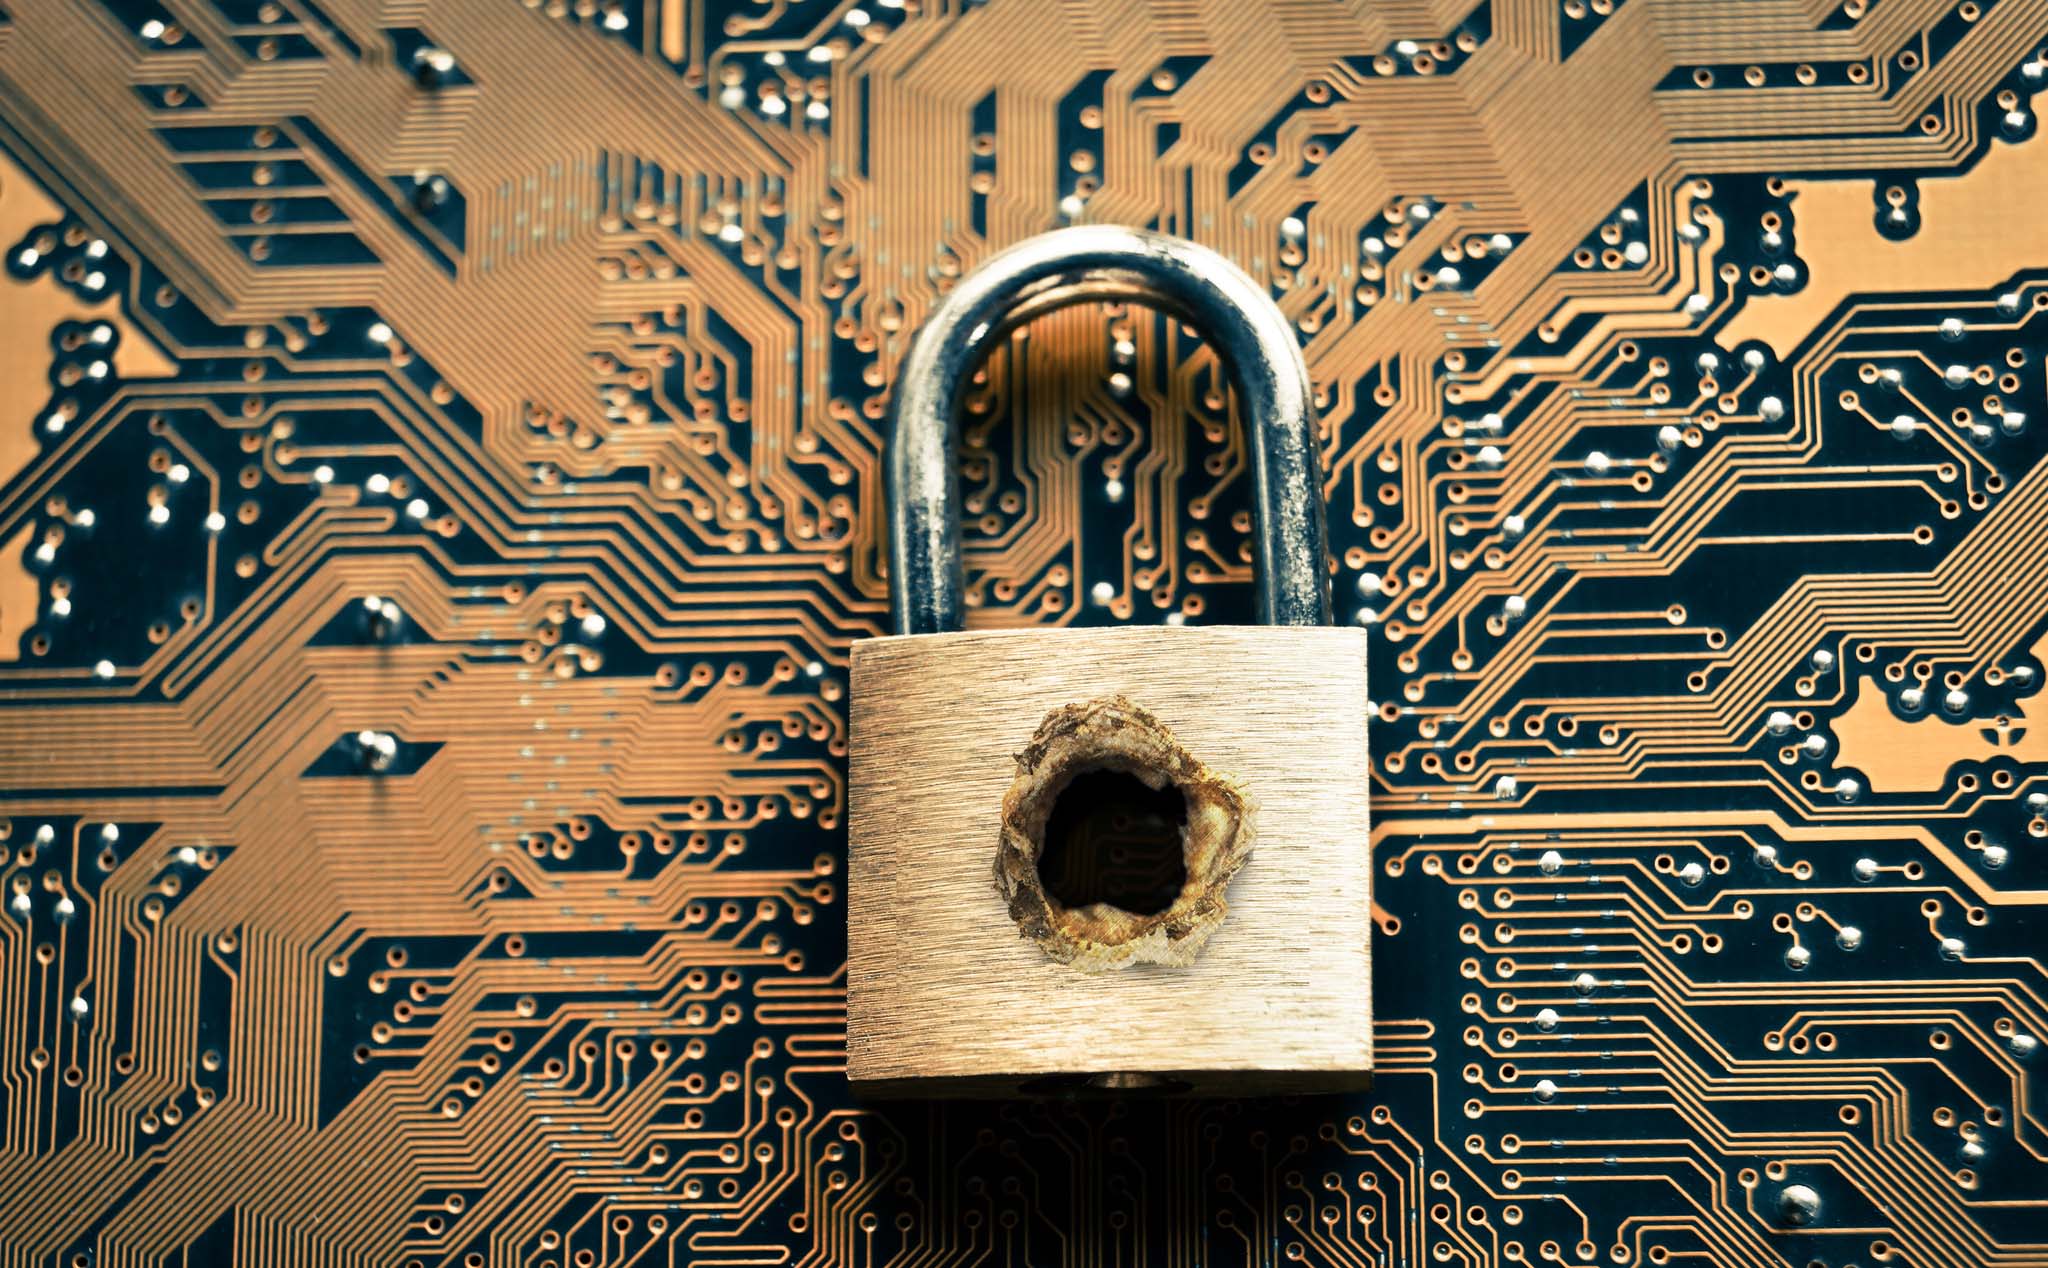 Vụ Marriott và Quora bị hack: Hãy đổi ngay password mọi trang web anh em đang dùng